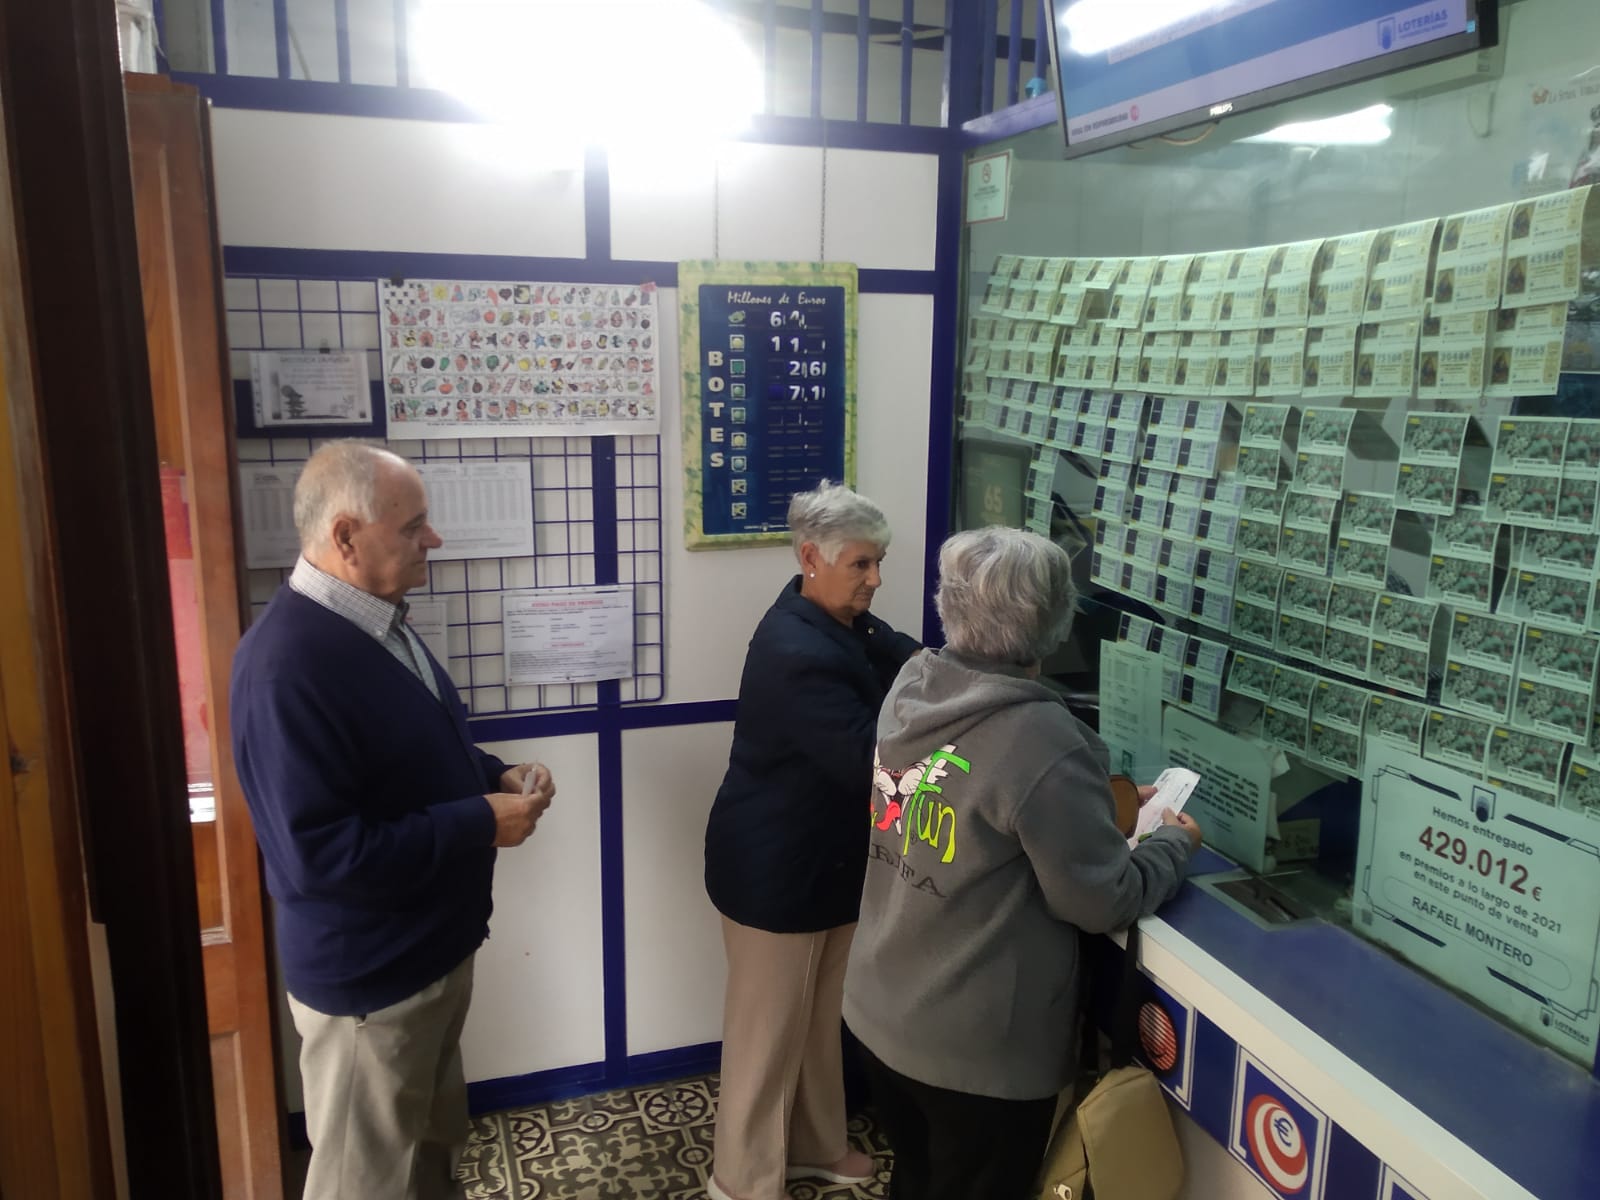 Administración nº1 de loterias y apuestas del estado - Tarifa.